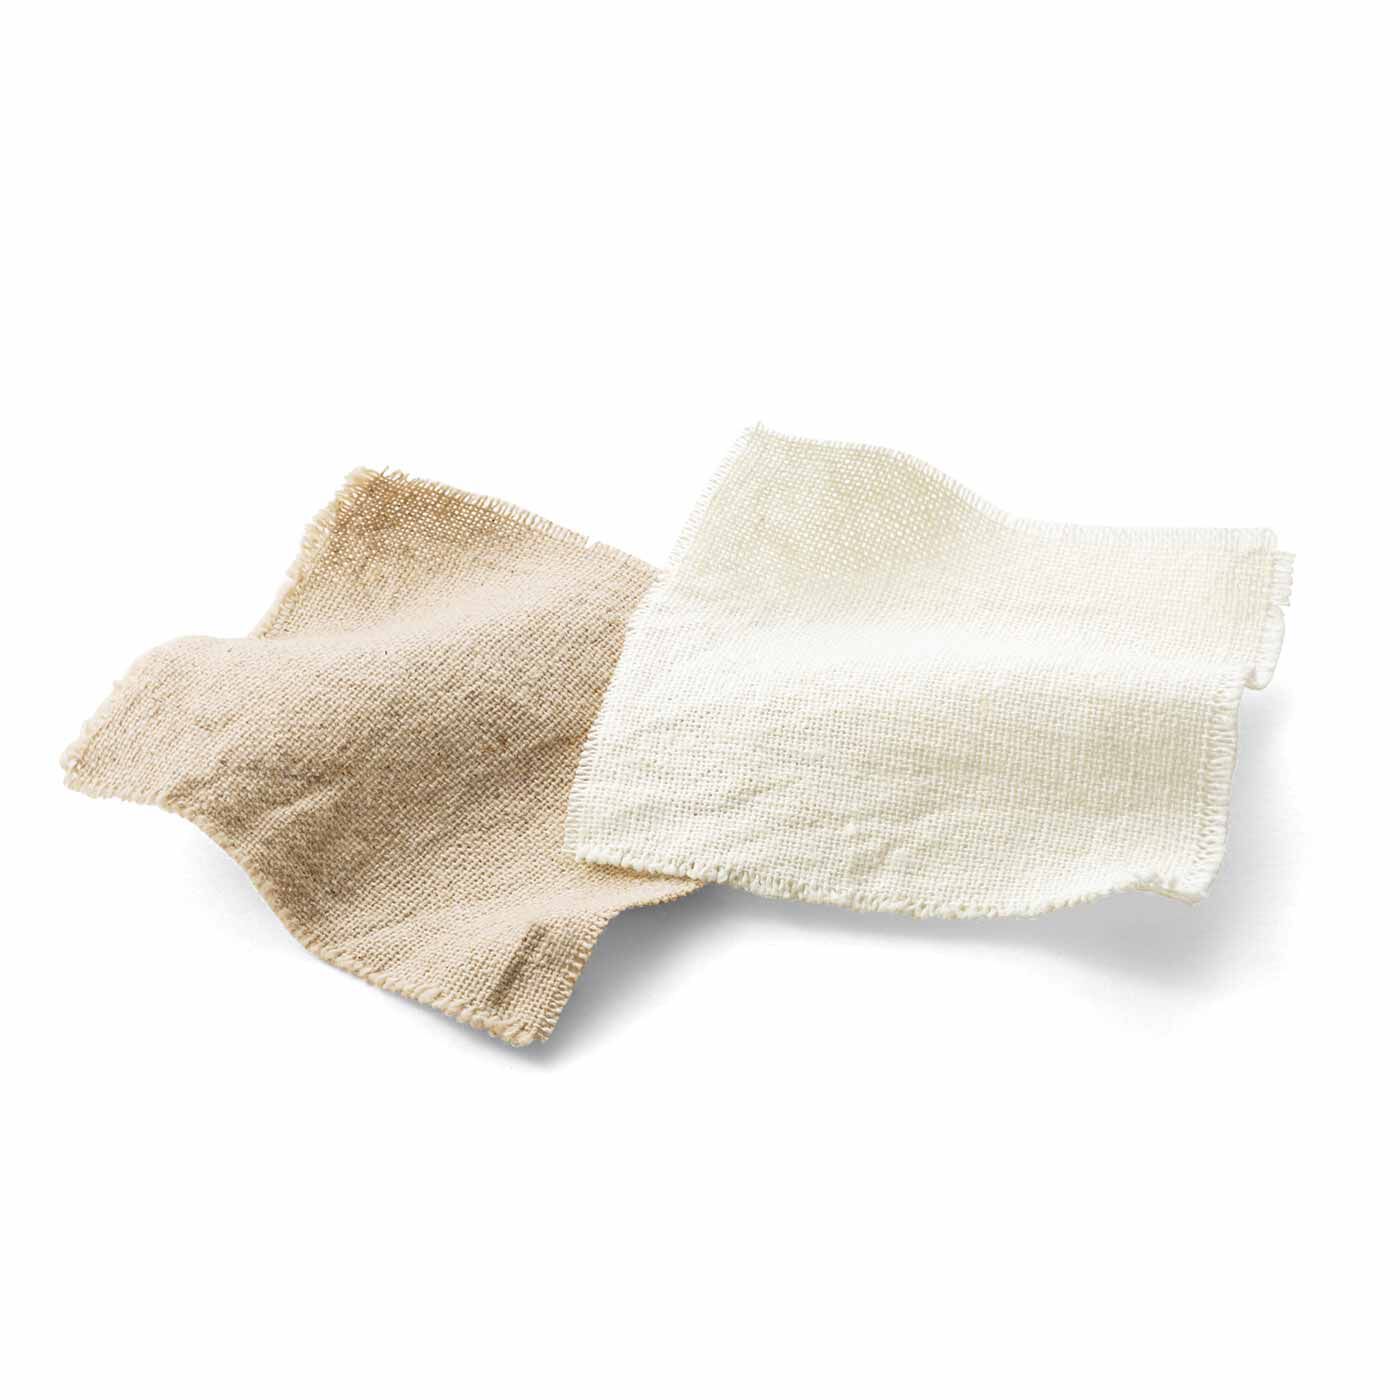 SeeMONO|心地よいおうち時間 綿麻素材のHYGGEエプロン〈WHITE〉|長く愛用して味わいを深めたい綿麻素材。